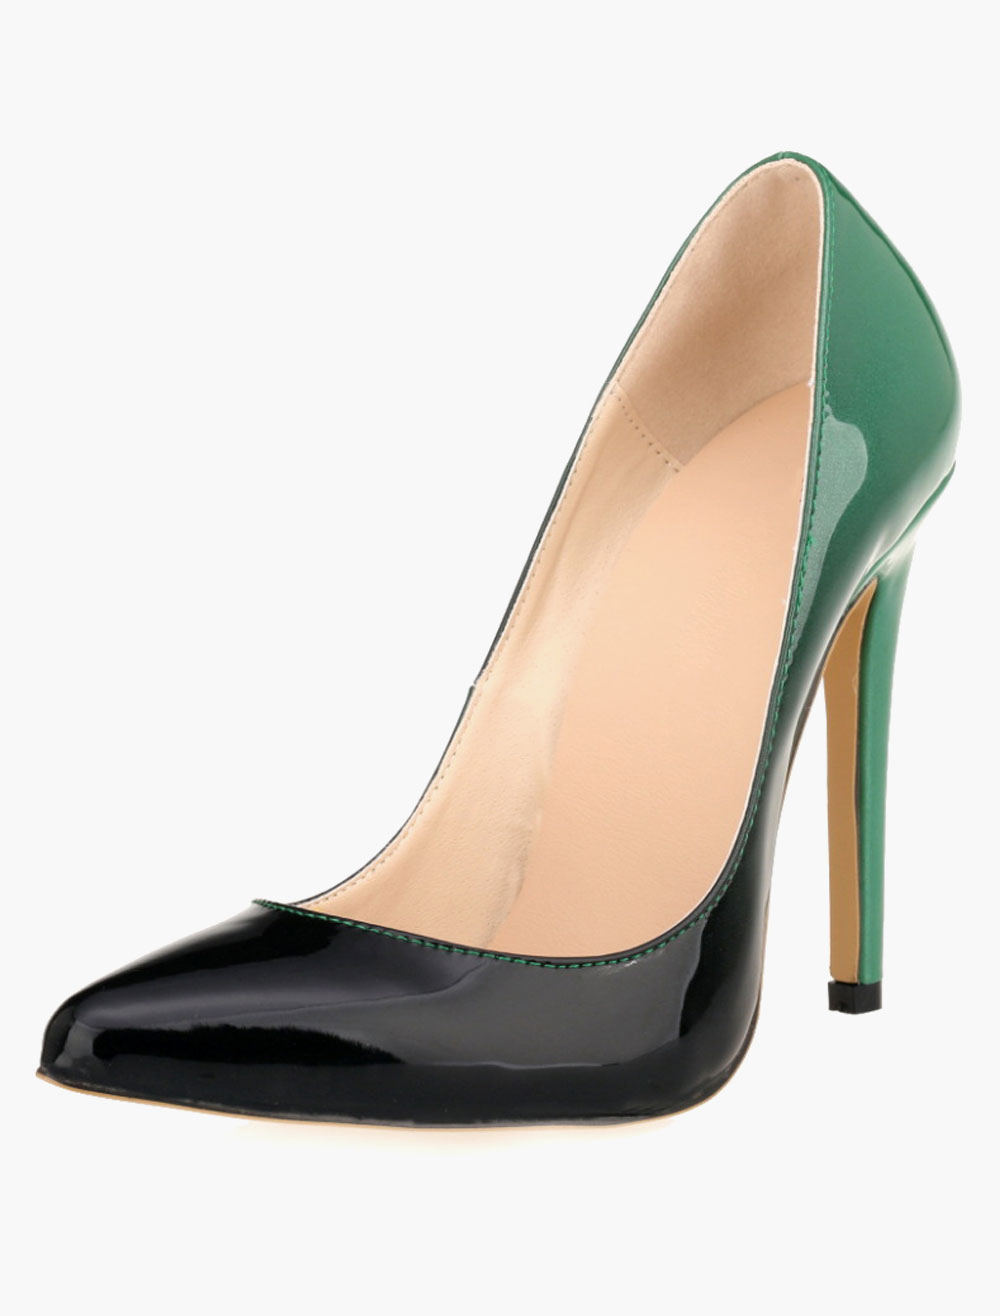 ombre high heels